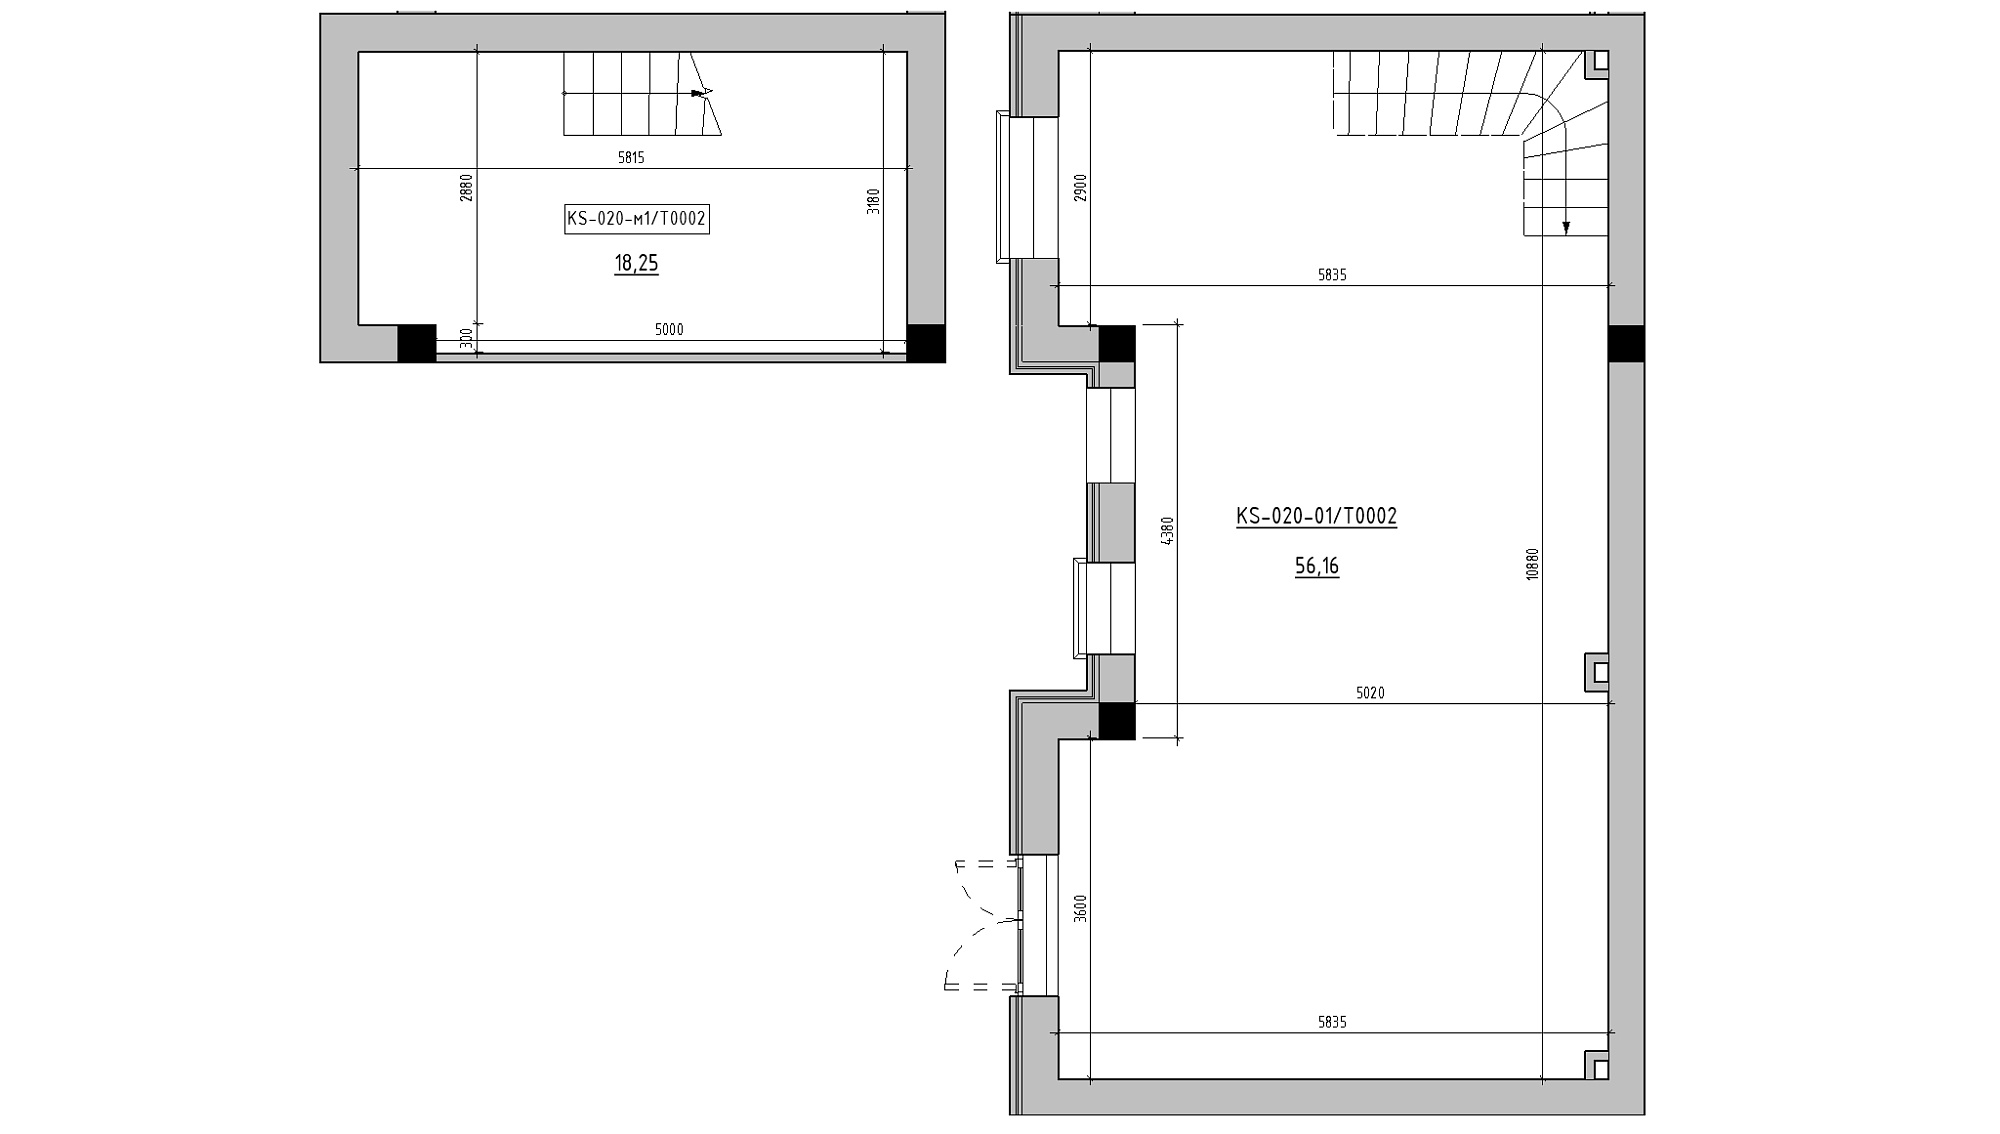 Planning Commercial premises area 74.41m2, KS-020-01/Т002.